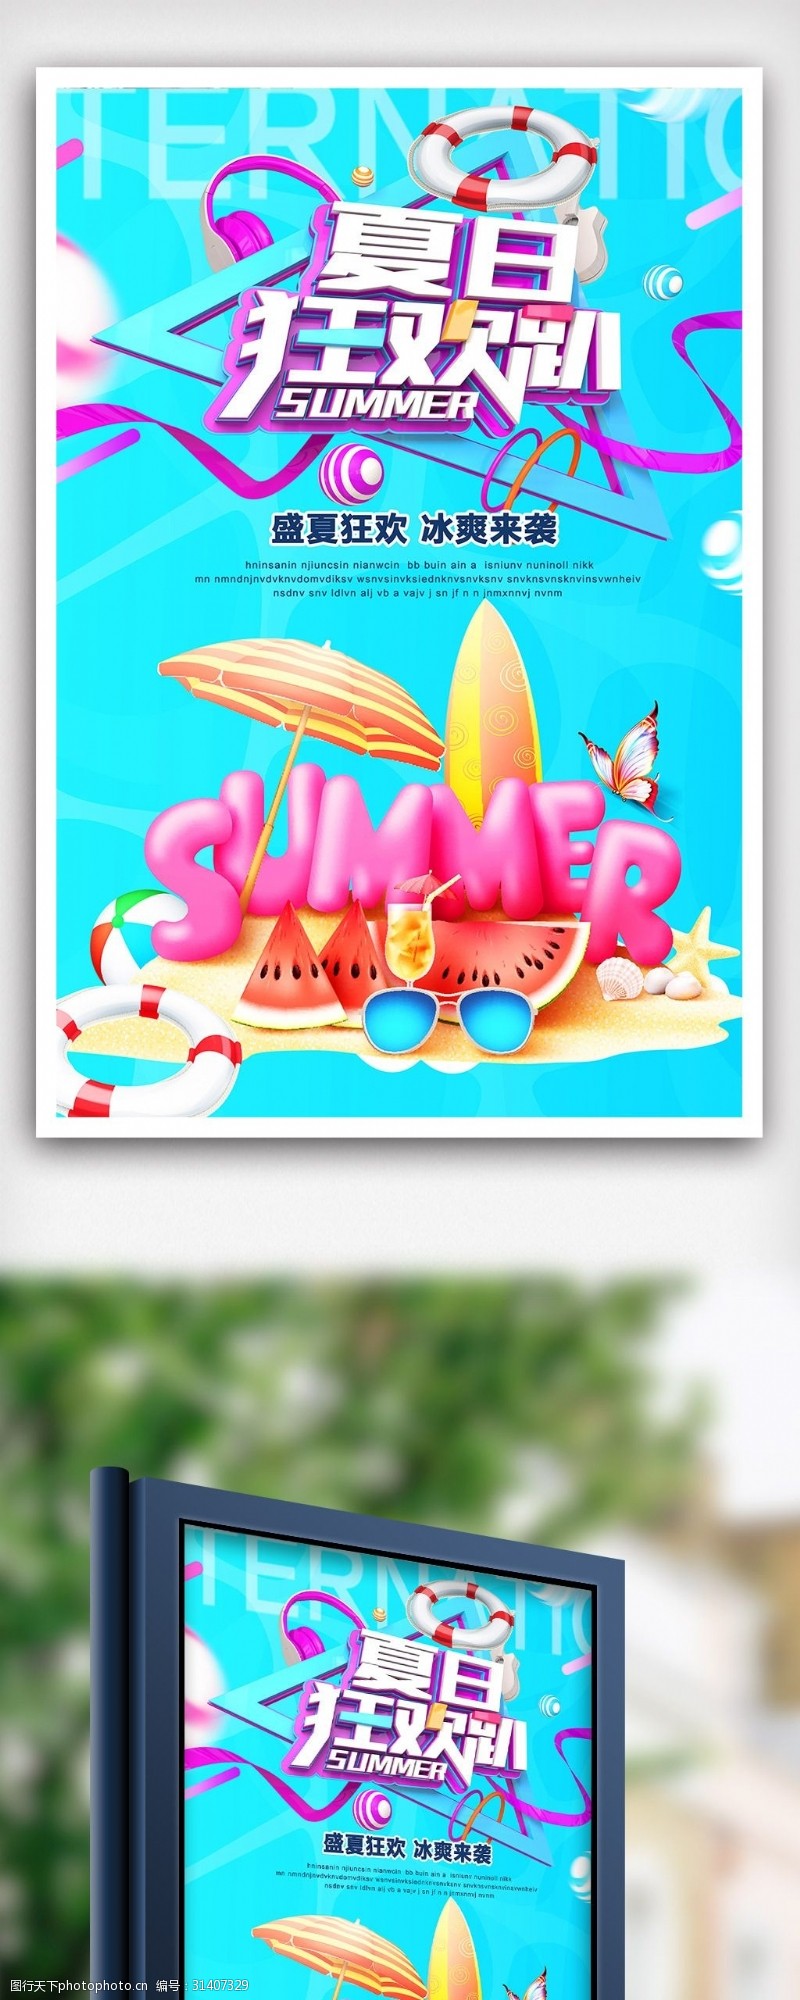 游泳馆开业简洁大气夏日狂欢促销海报